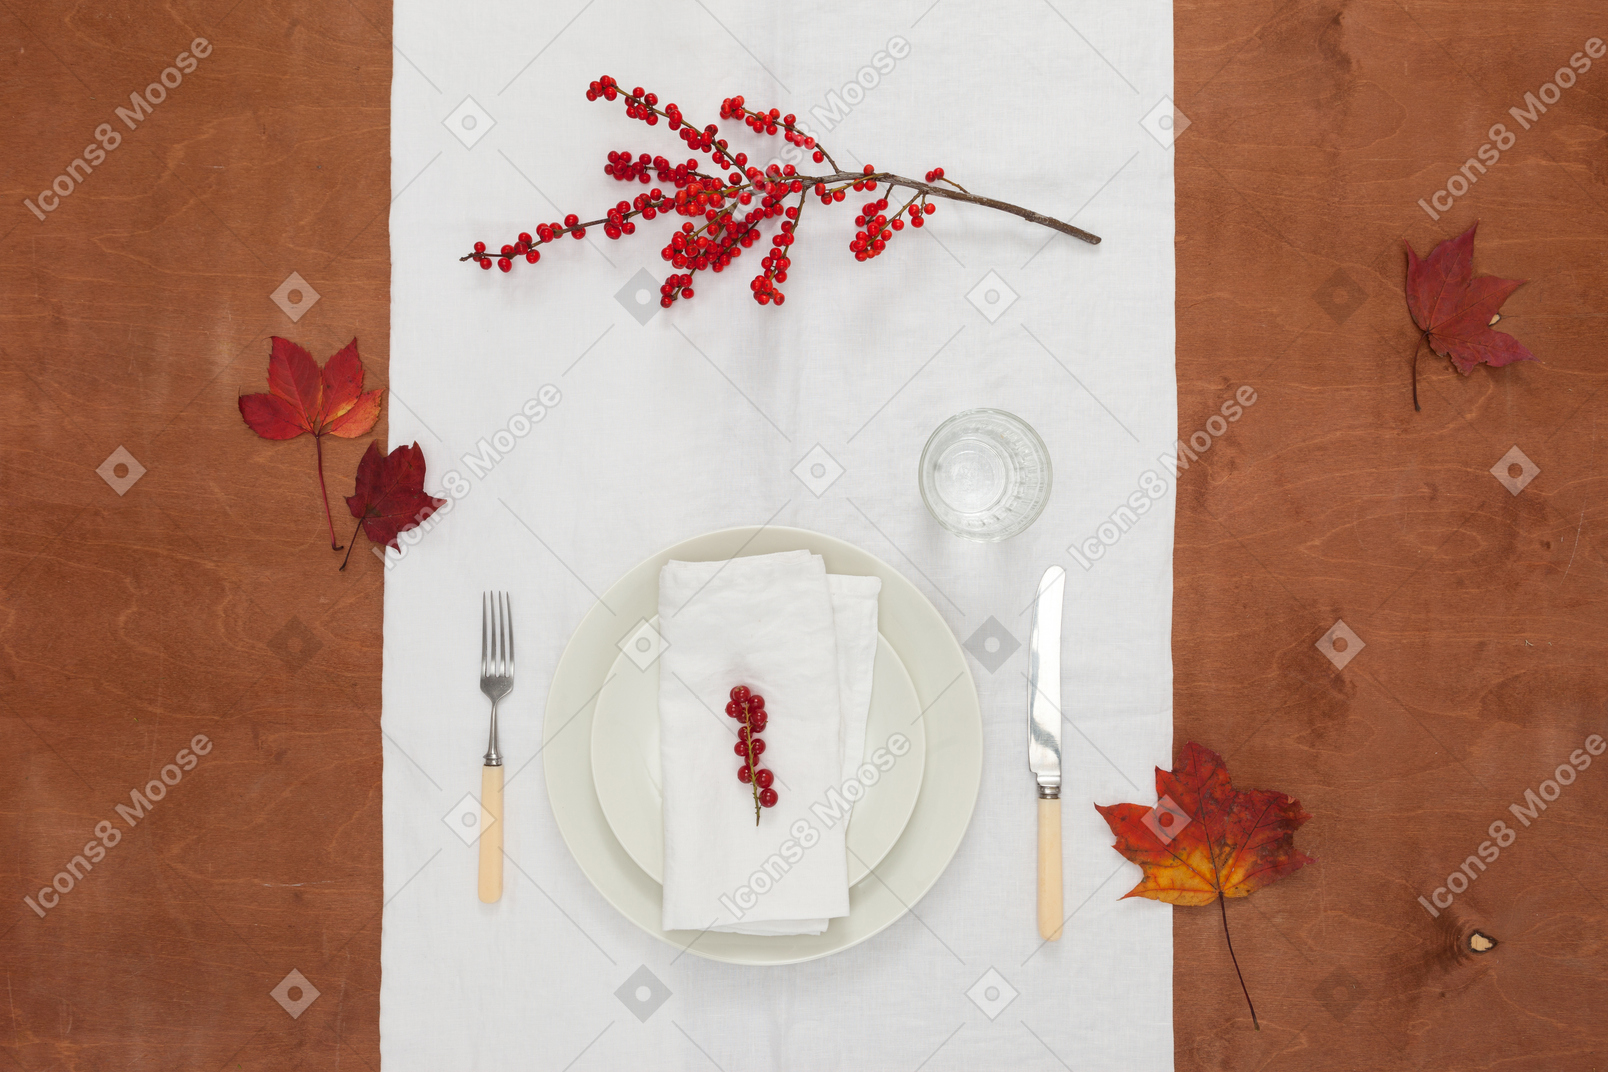 Autumn dinner